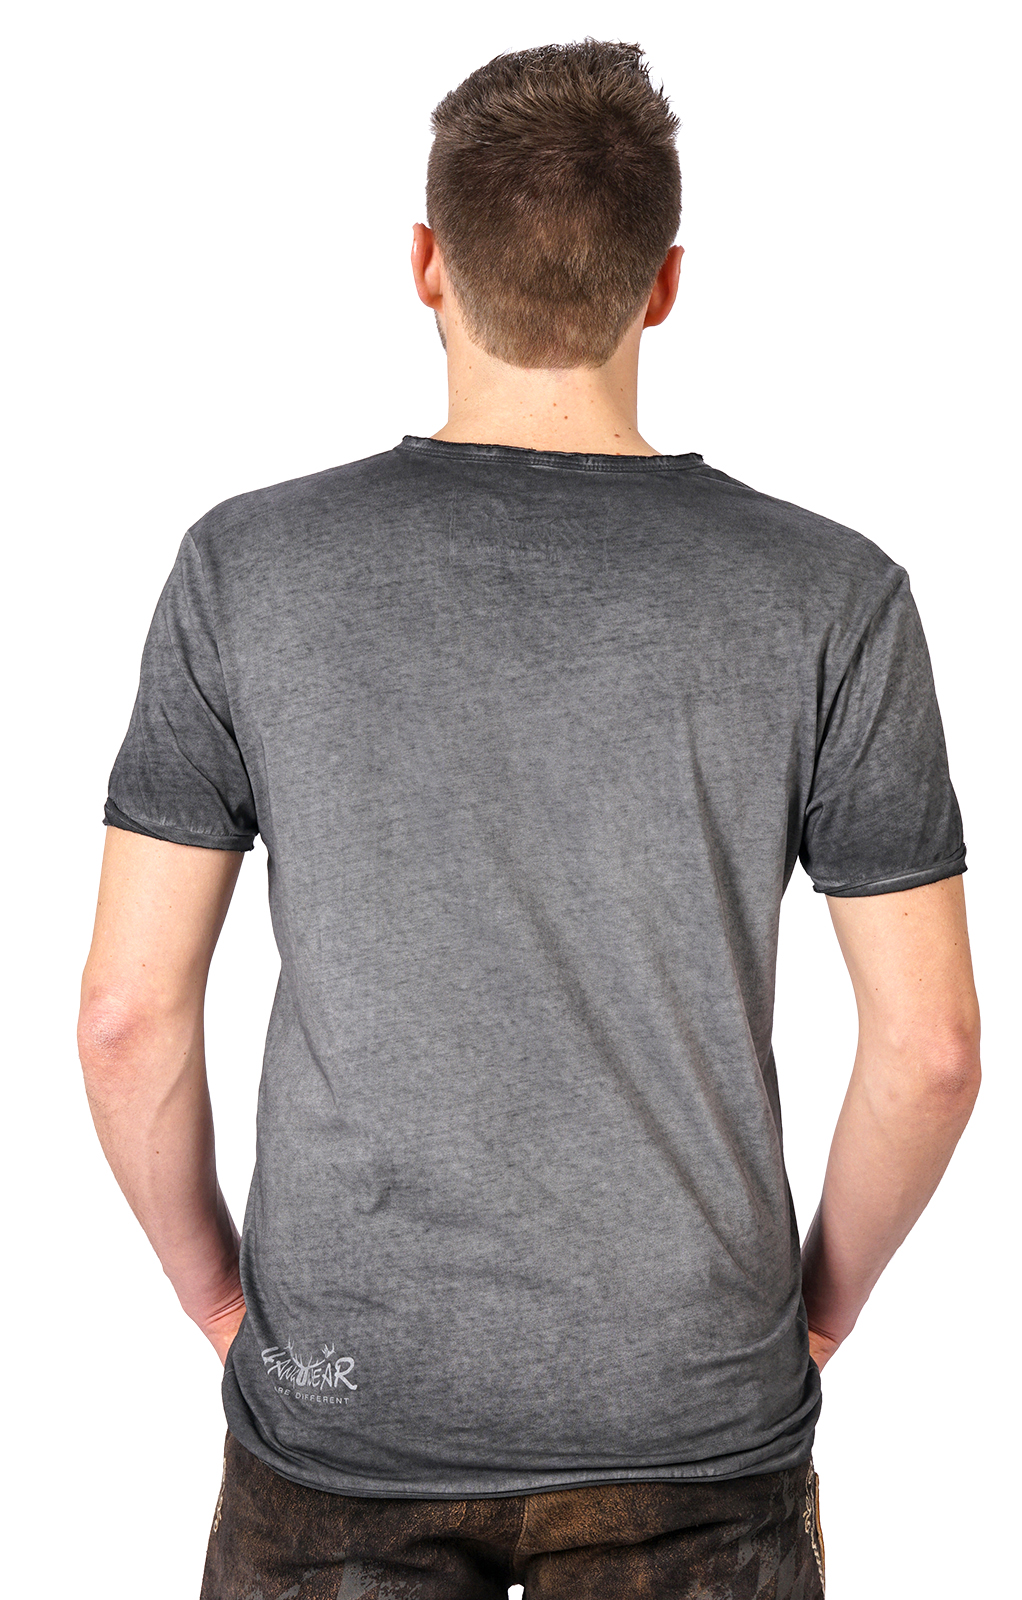 weitere Bilder von Trachten T-Shirt FERDI Bavaria grau